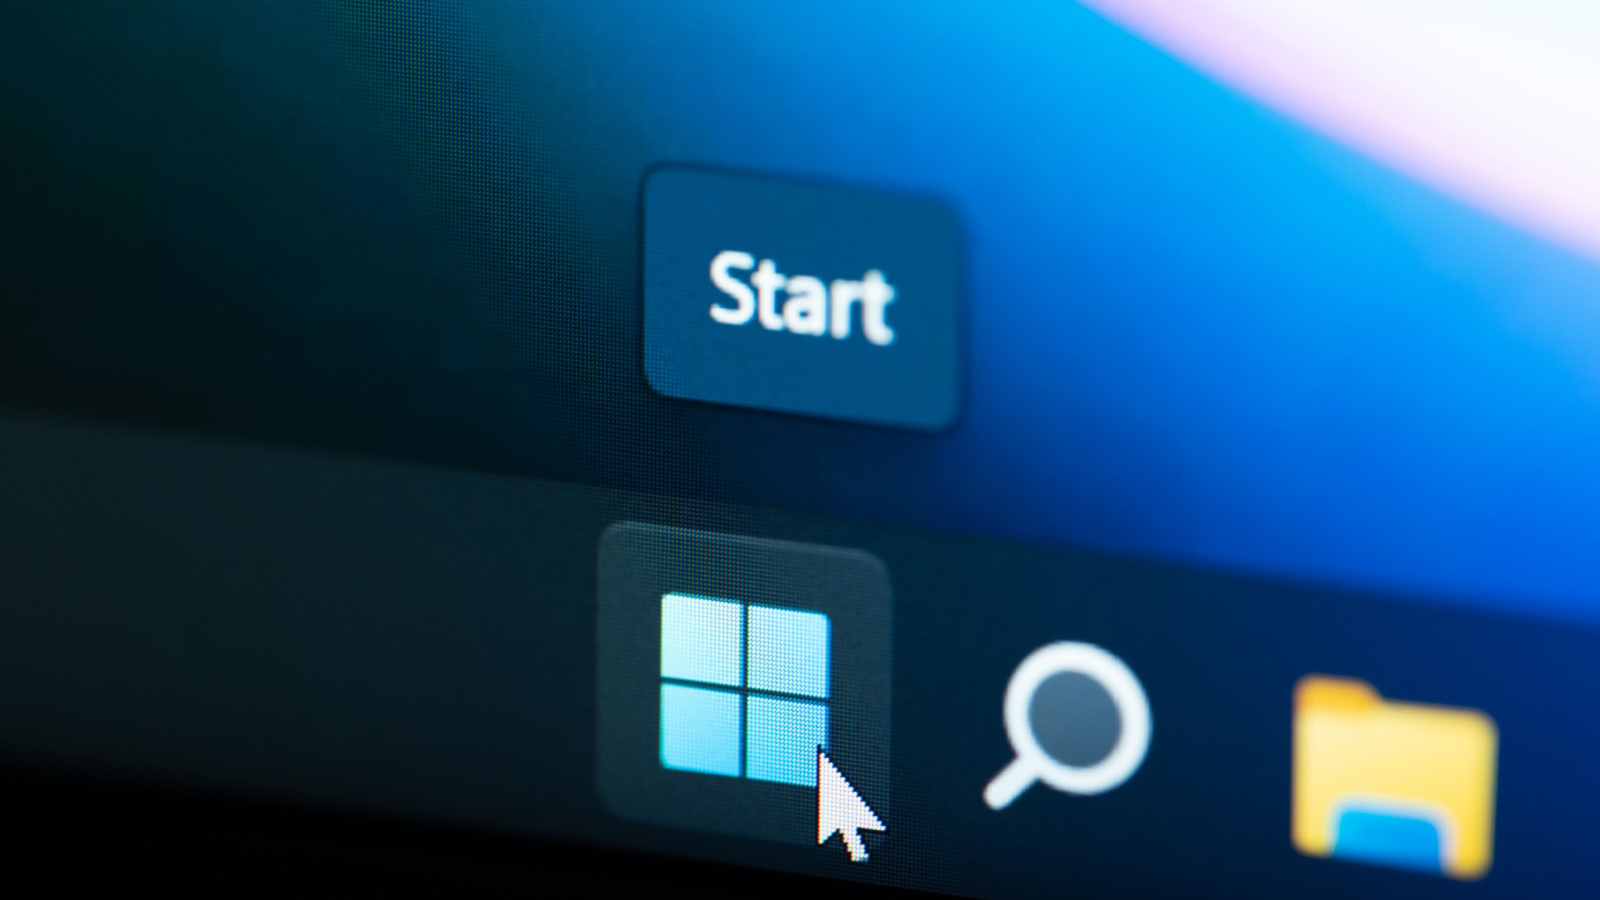 Windows 11 vous permettra bientôt de paramétrer des raccourcis vocaux pour vos tâches quotidiennes